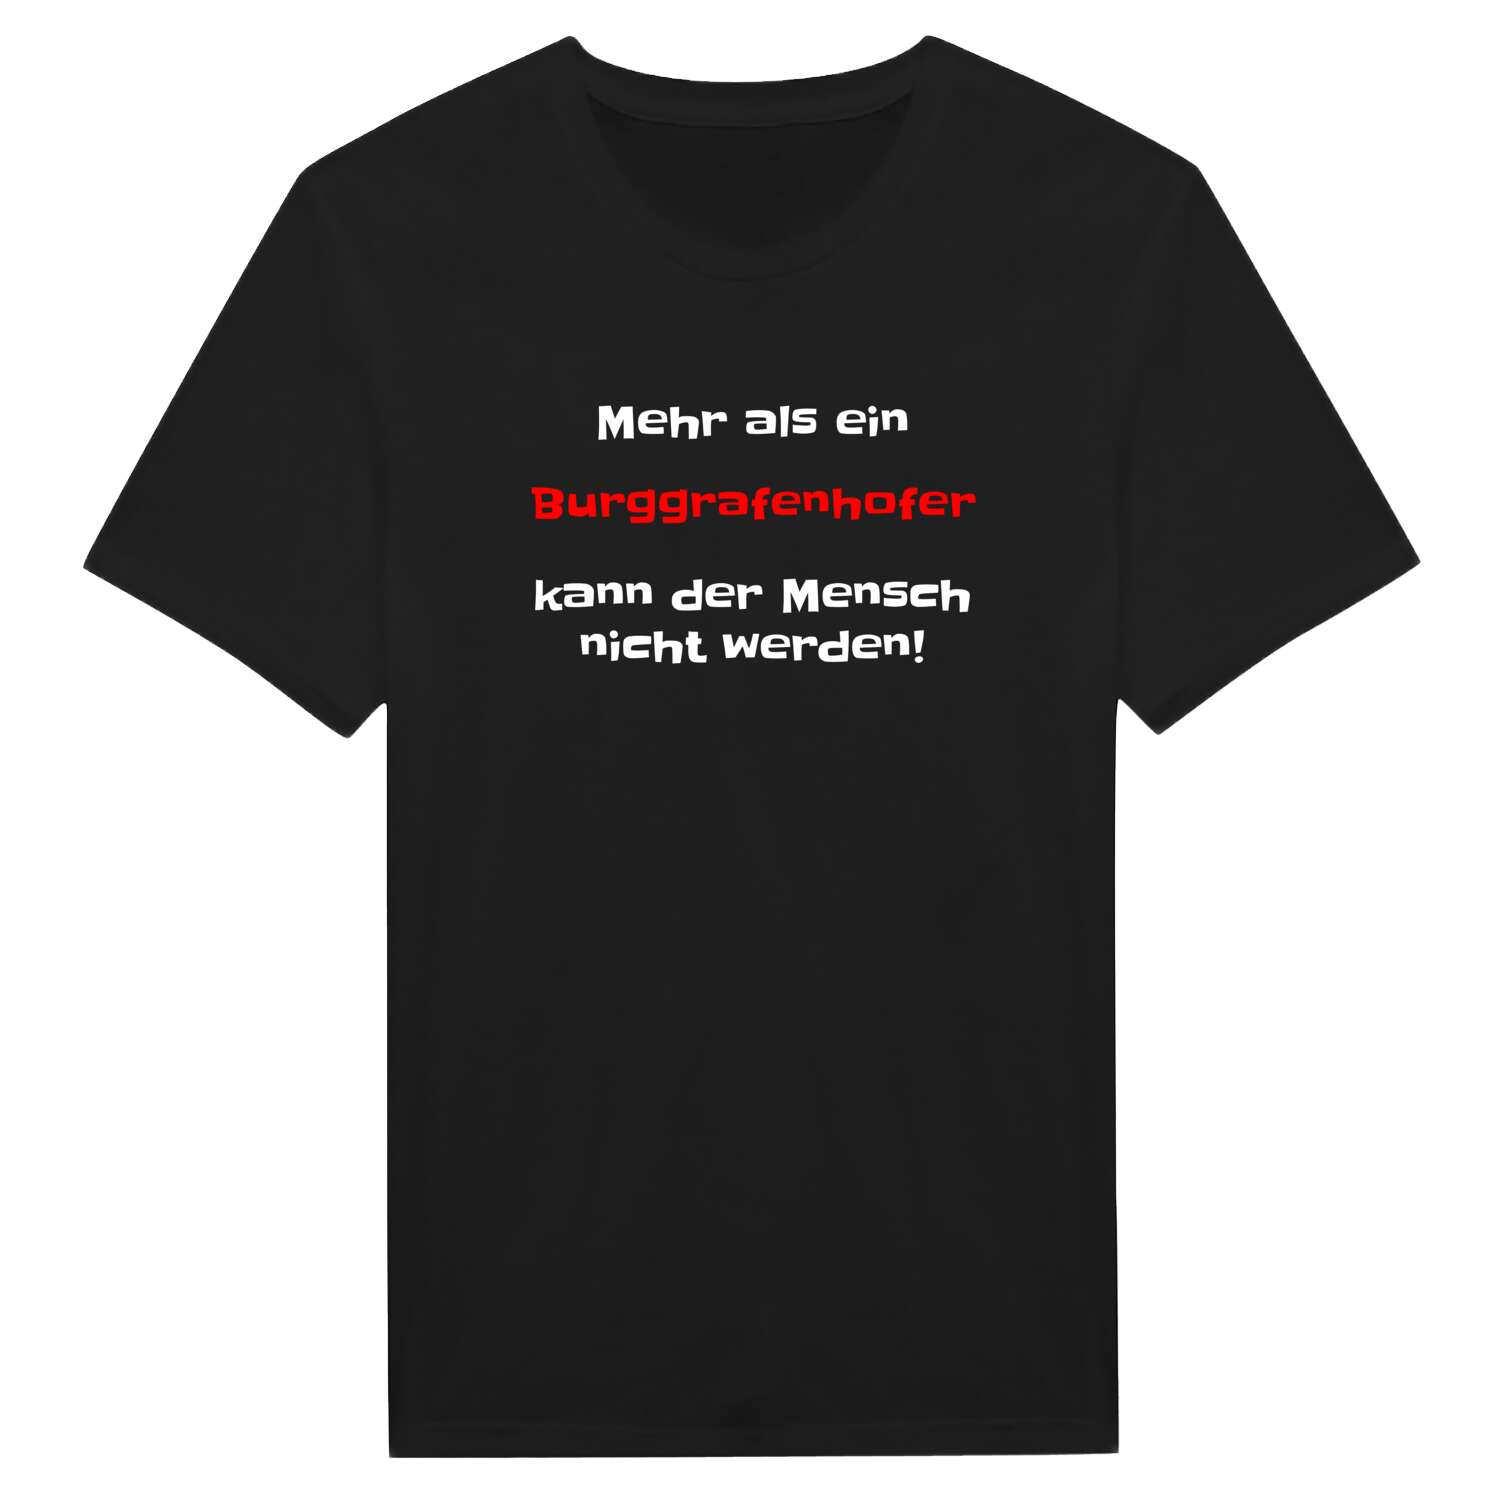 Burggrafenhof T-Shirt »Mehr als ein«